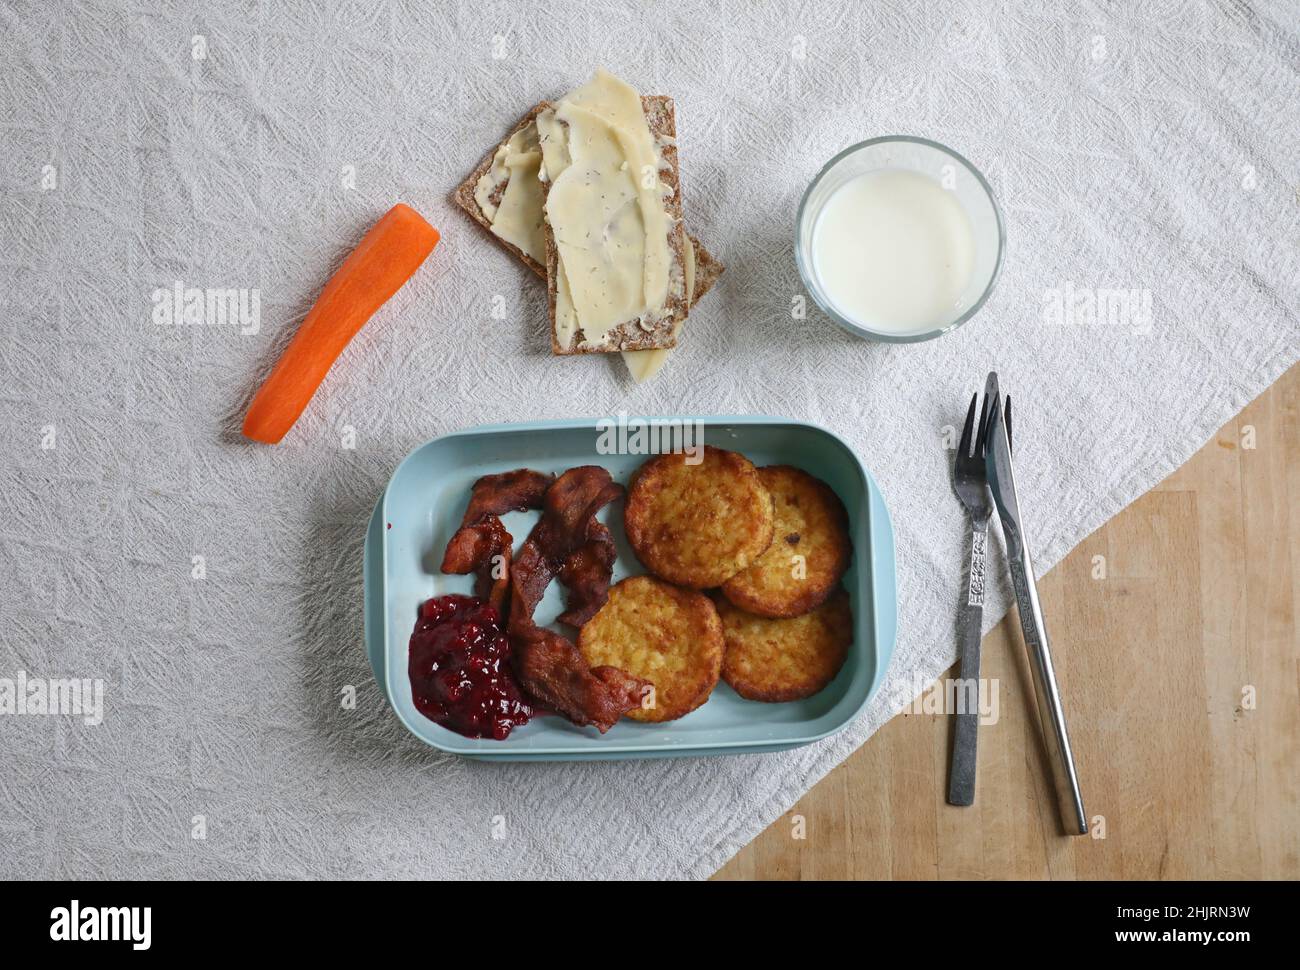 Gennaio è il mese povero non ufficiale dell'anno. Qui c'è qualcuno che mangia focaccine di patate, pancetta con carota, croccante svedese e un bicchiere di latte per pranzo. Foto Stock